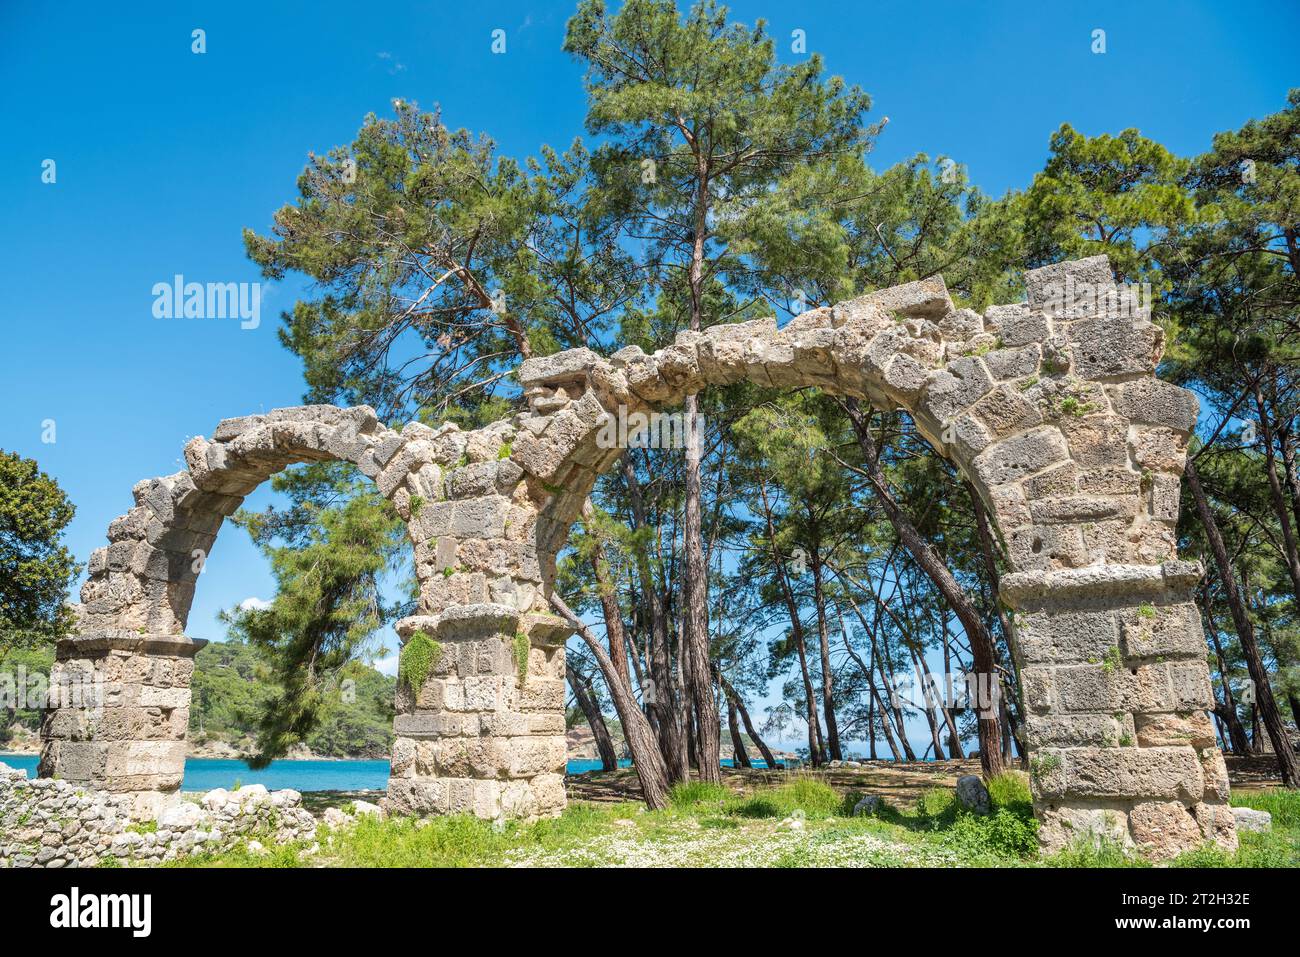 Aqueduc en ruine sur le site antique de Phaselis à Antalya, Turquie. Les aqueducs fournissaient de l'eau douce aux bains publics et de l'eau potable. Ponts, construits Banque D'Images